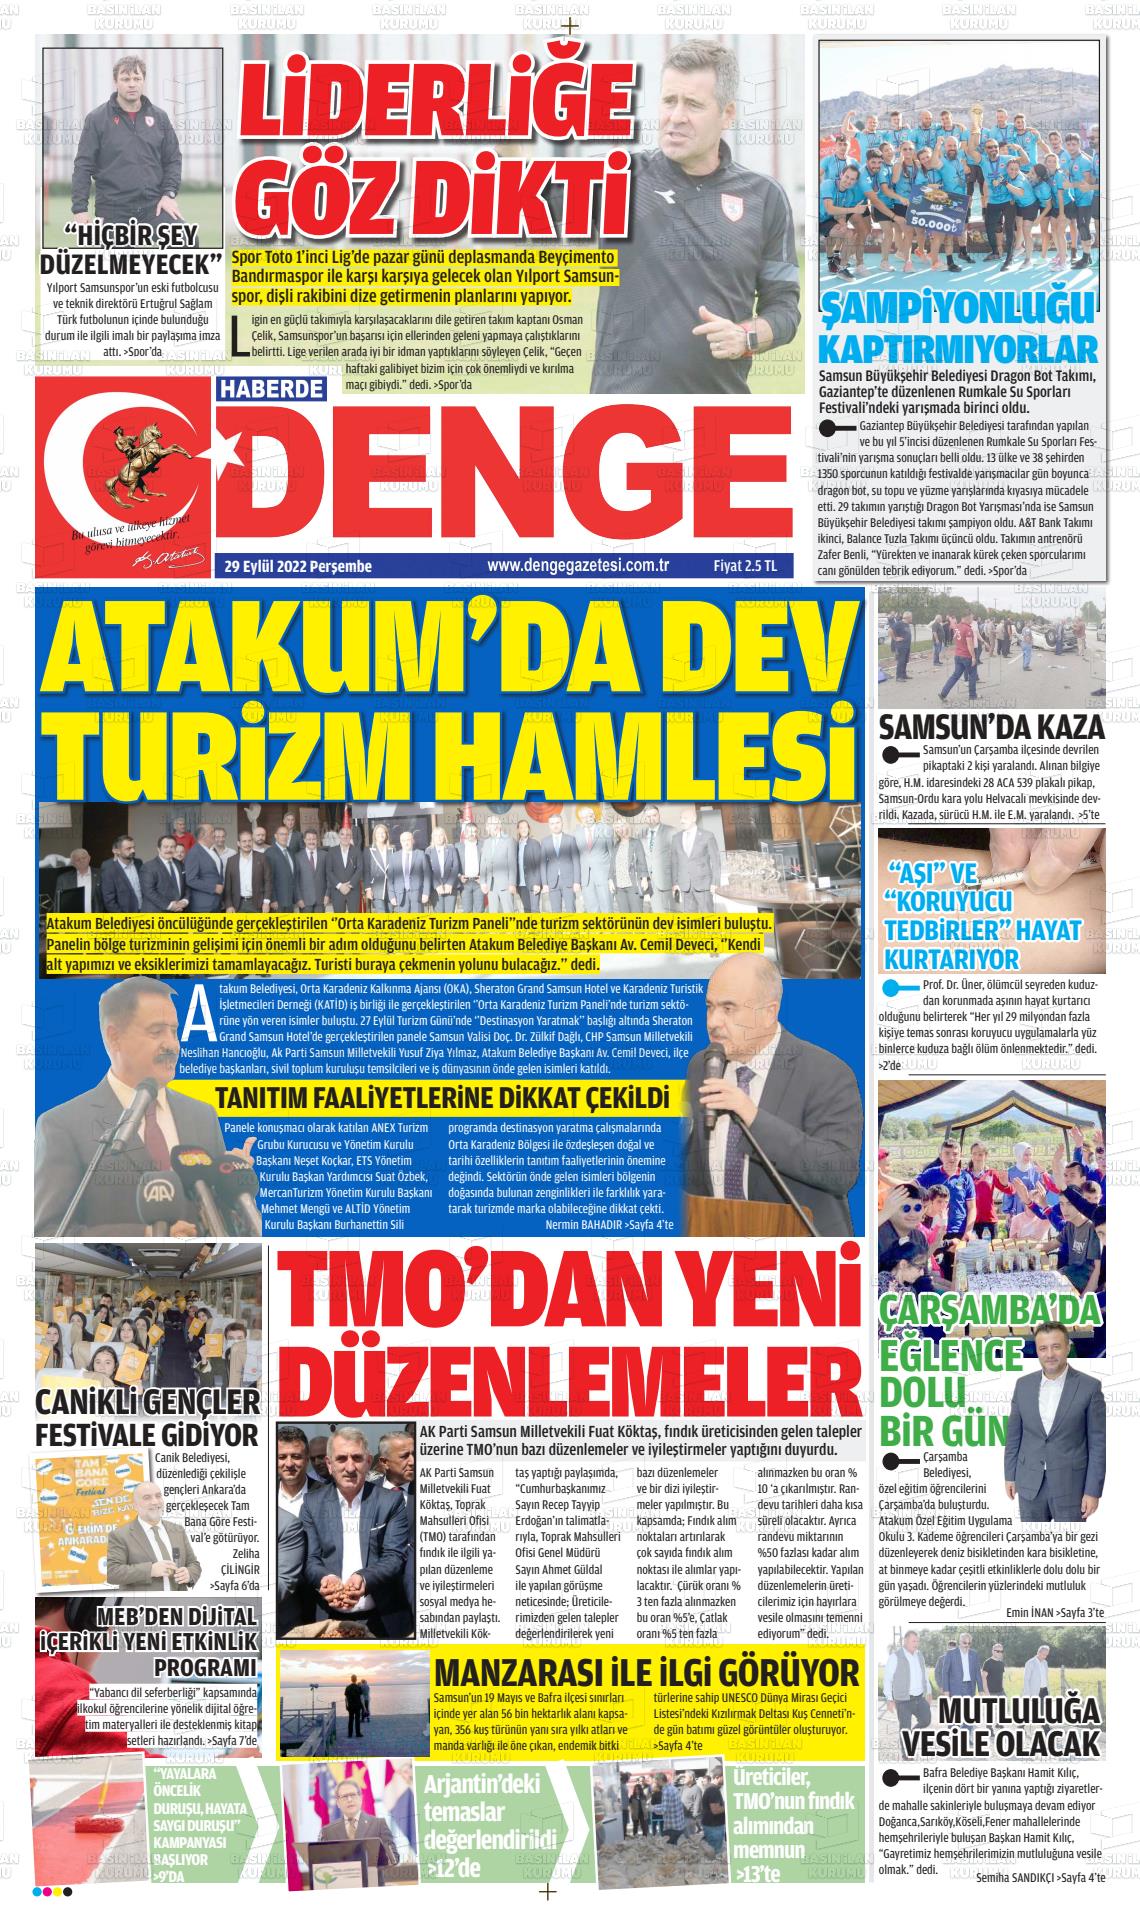 29 Eylül 2022 Samsun Denge Gazete Manşeti